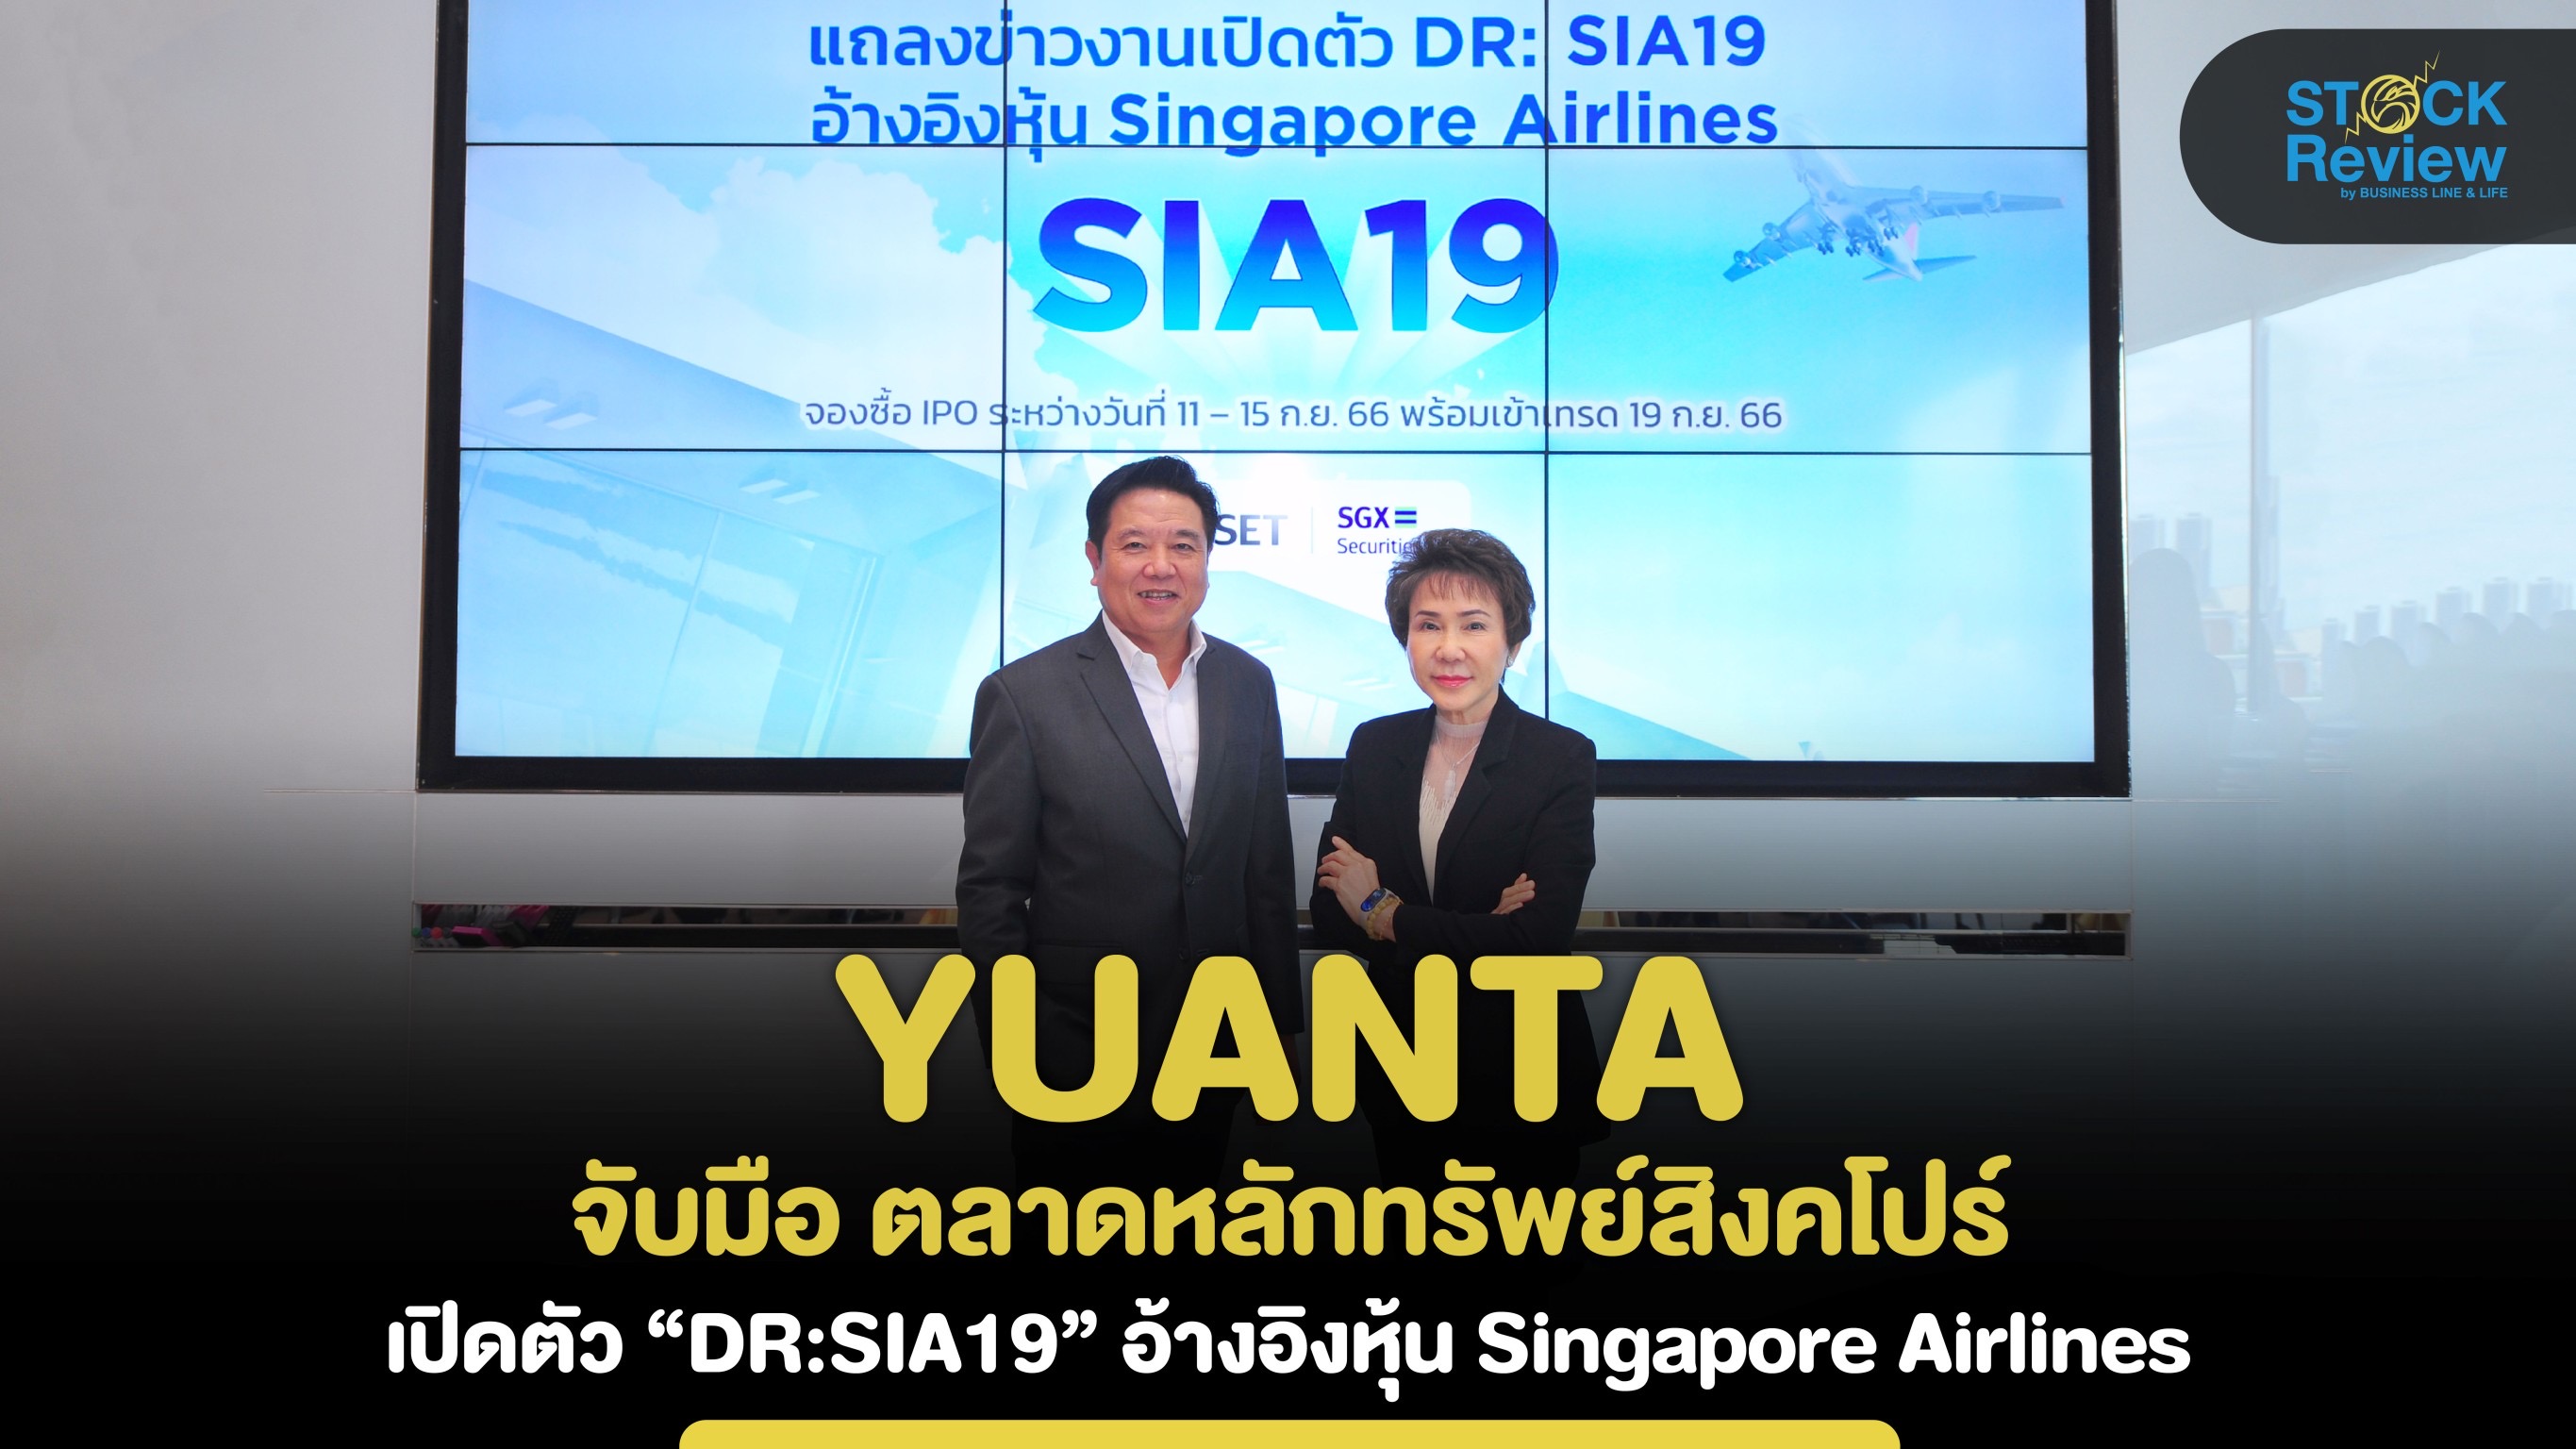 Yuanta จับมือ ตลาดหลักทรัพย์สิงคโปร์ เปิดตัว “DR:SIA19”  อ้างอิงหุ้น Singapore Airlines